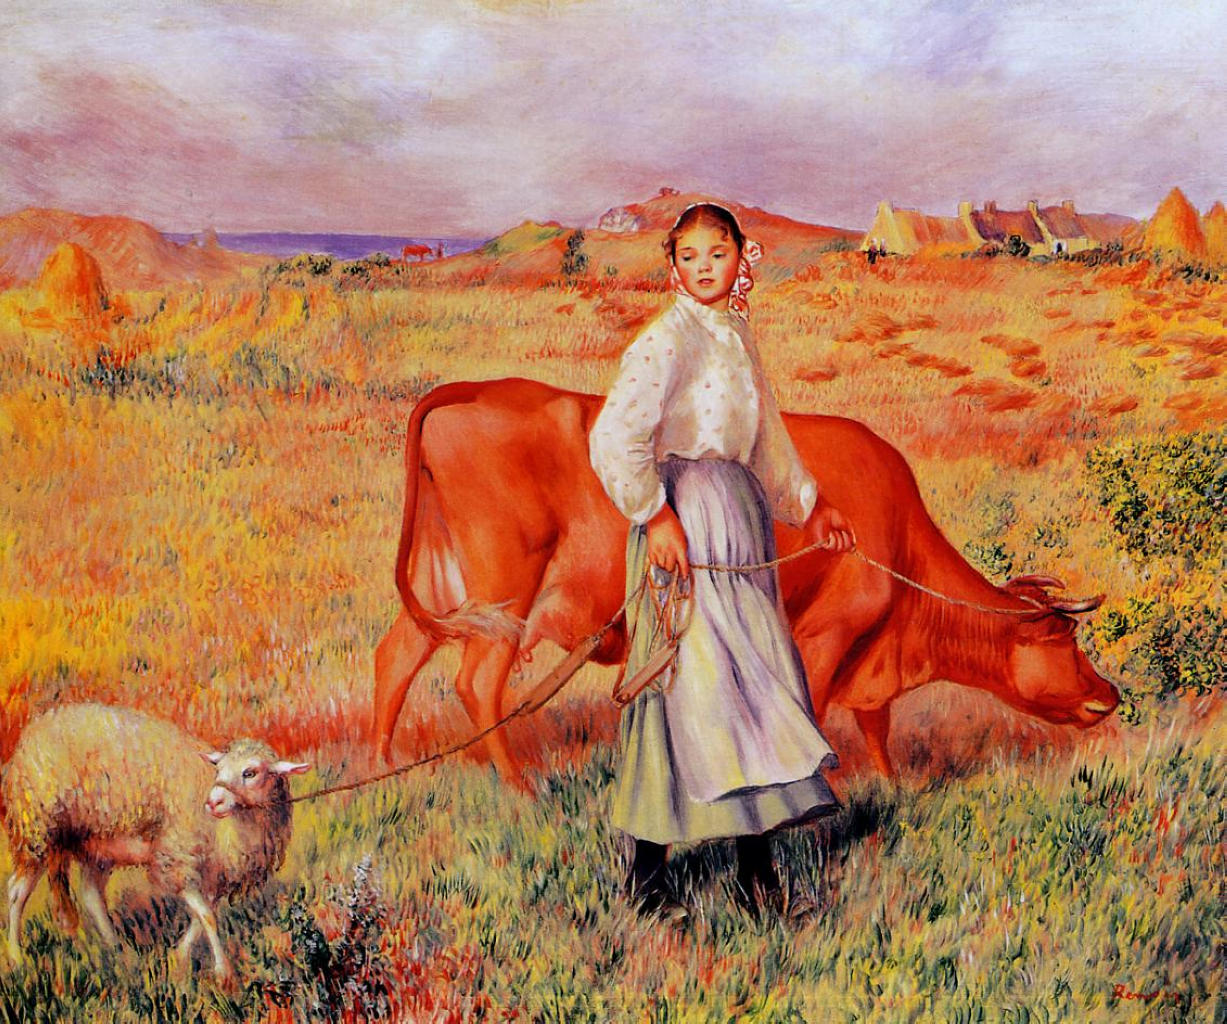 Shepherdess - Pierre-Auguste Renoir painting on canvas